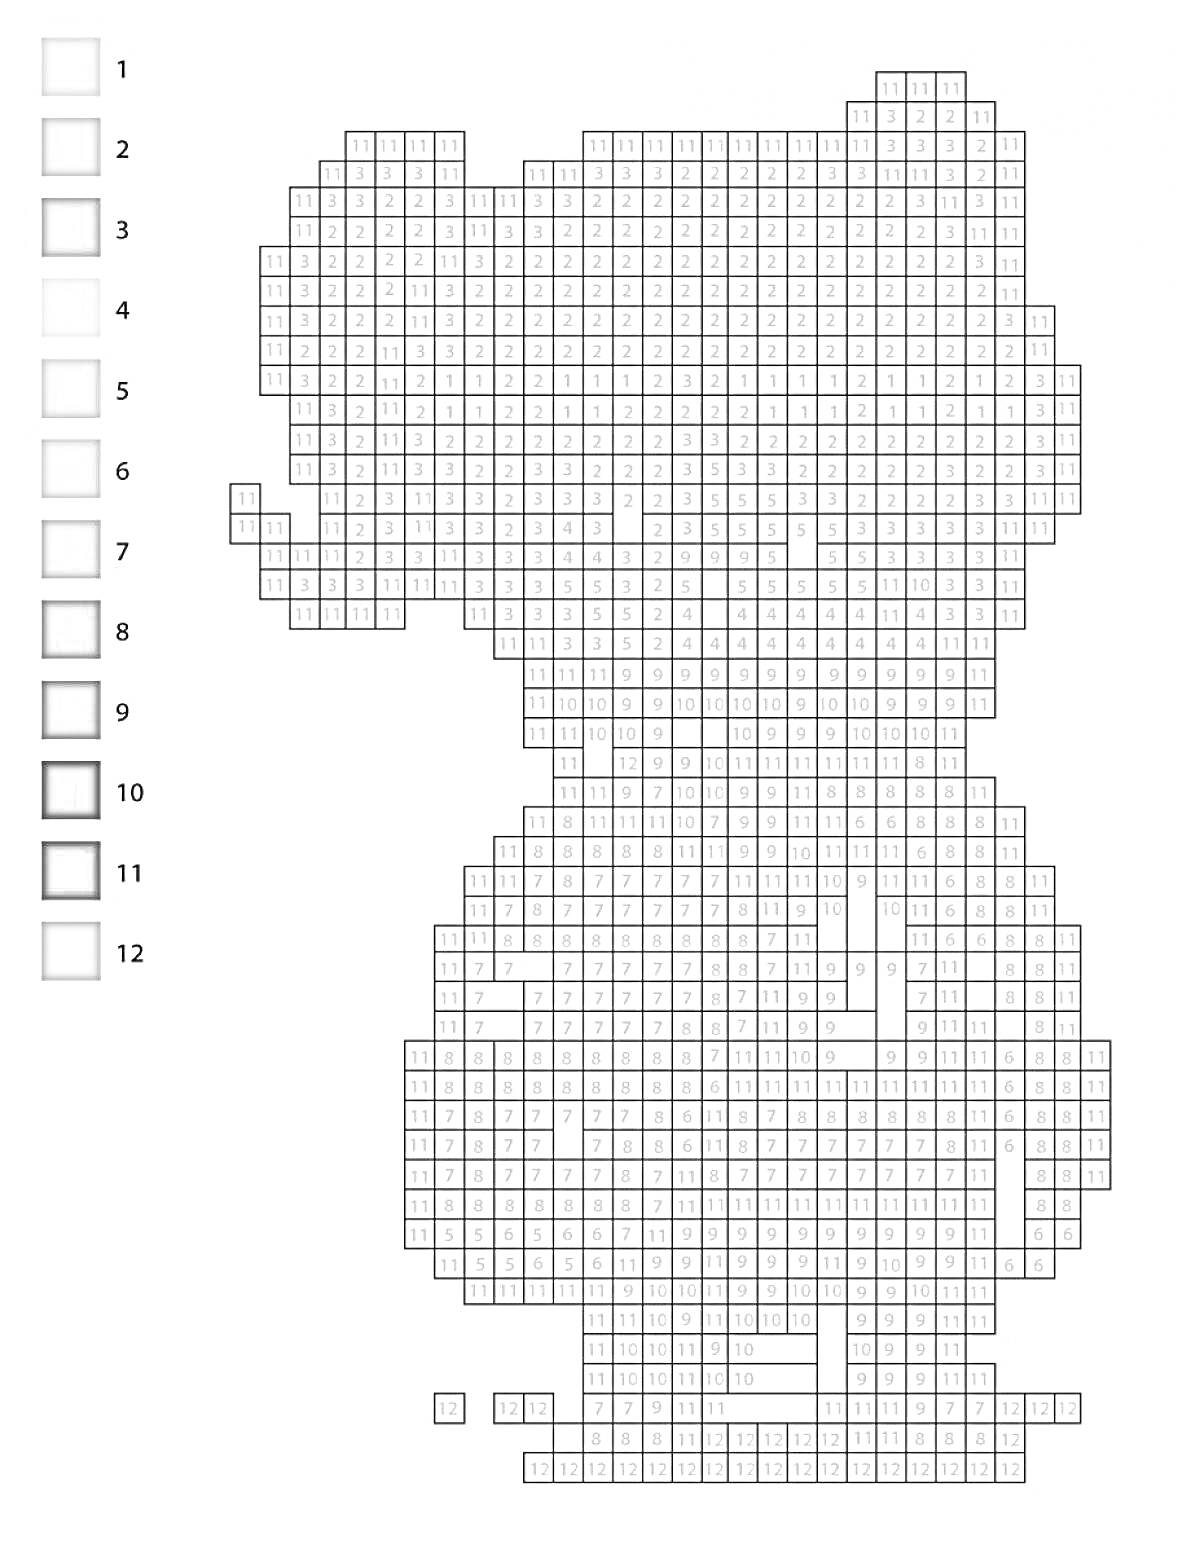 Раскраска Пиксельная раскраска с изображением медвежонка, содержит 12 цветов